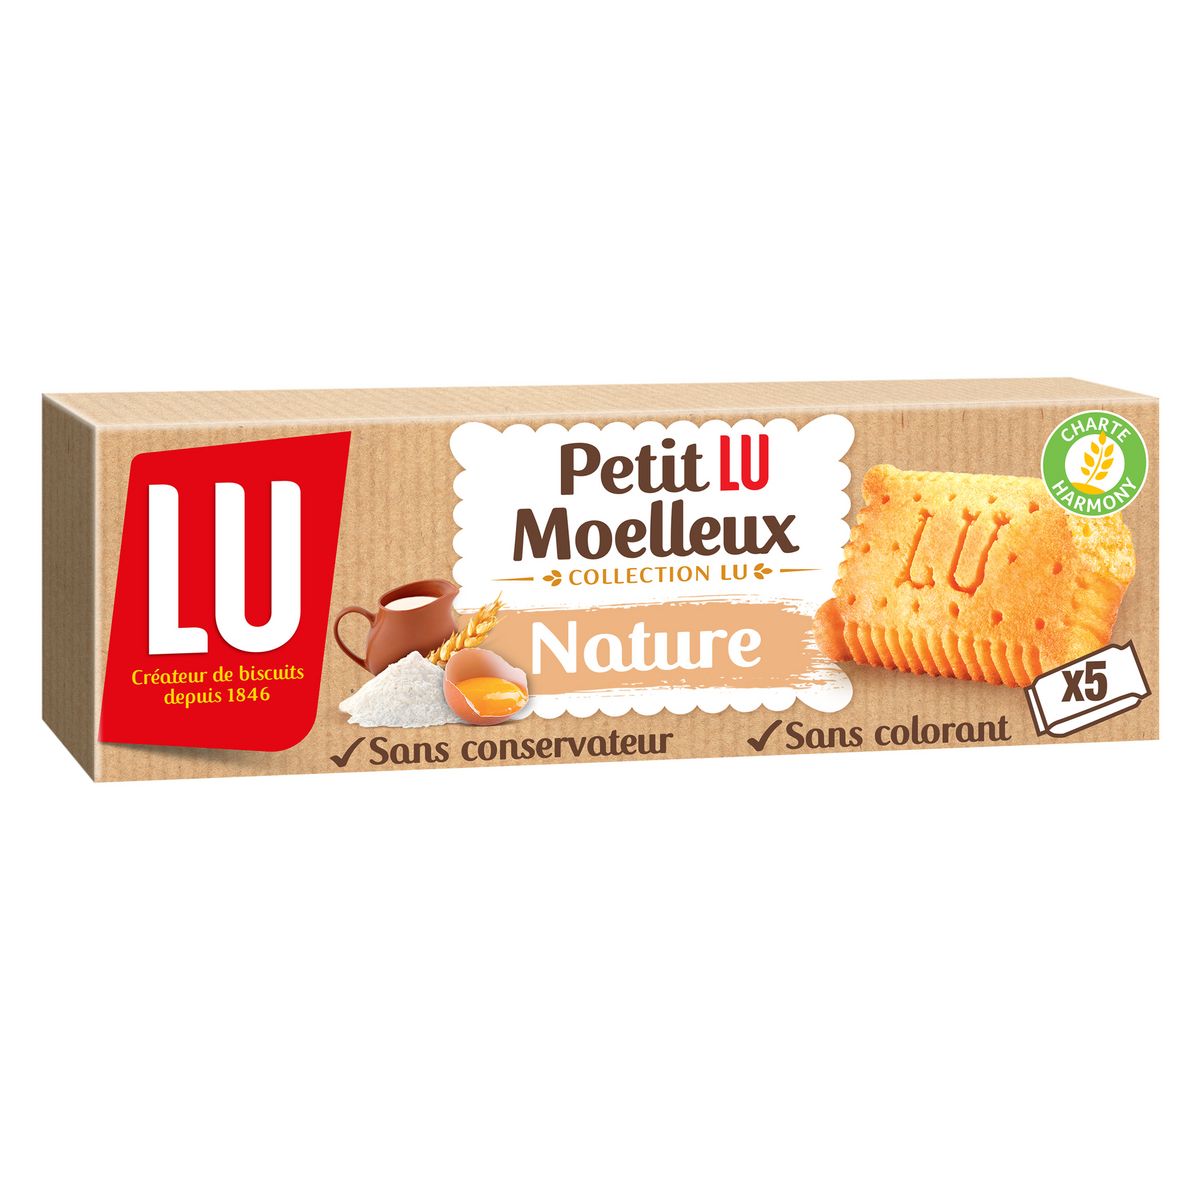 LU Petit Lu gâteaux moelleux nature sachets individuels 5 sachets 140g